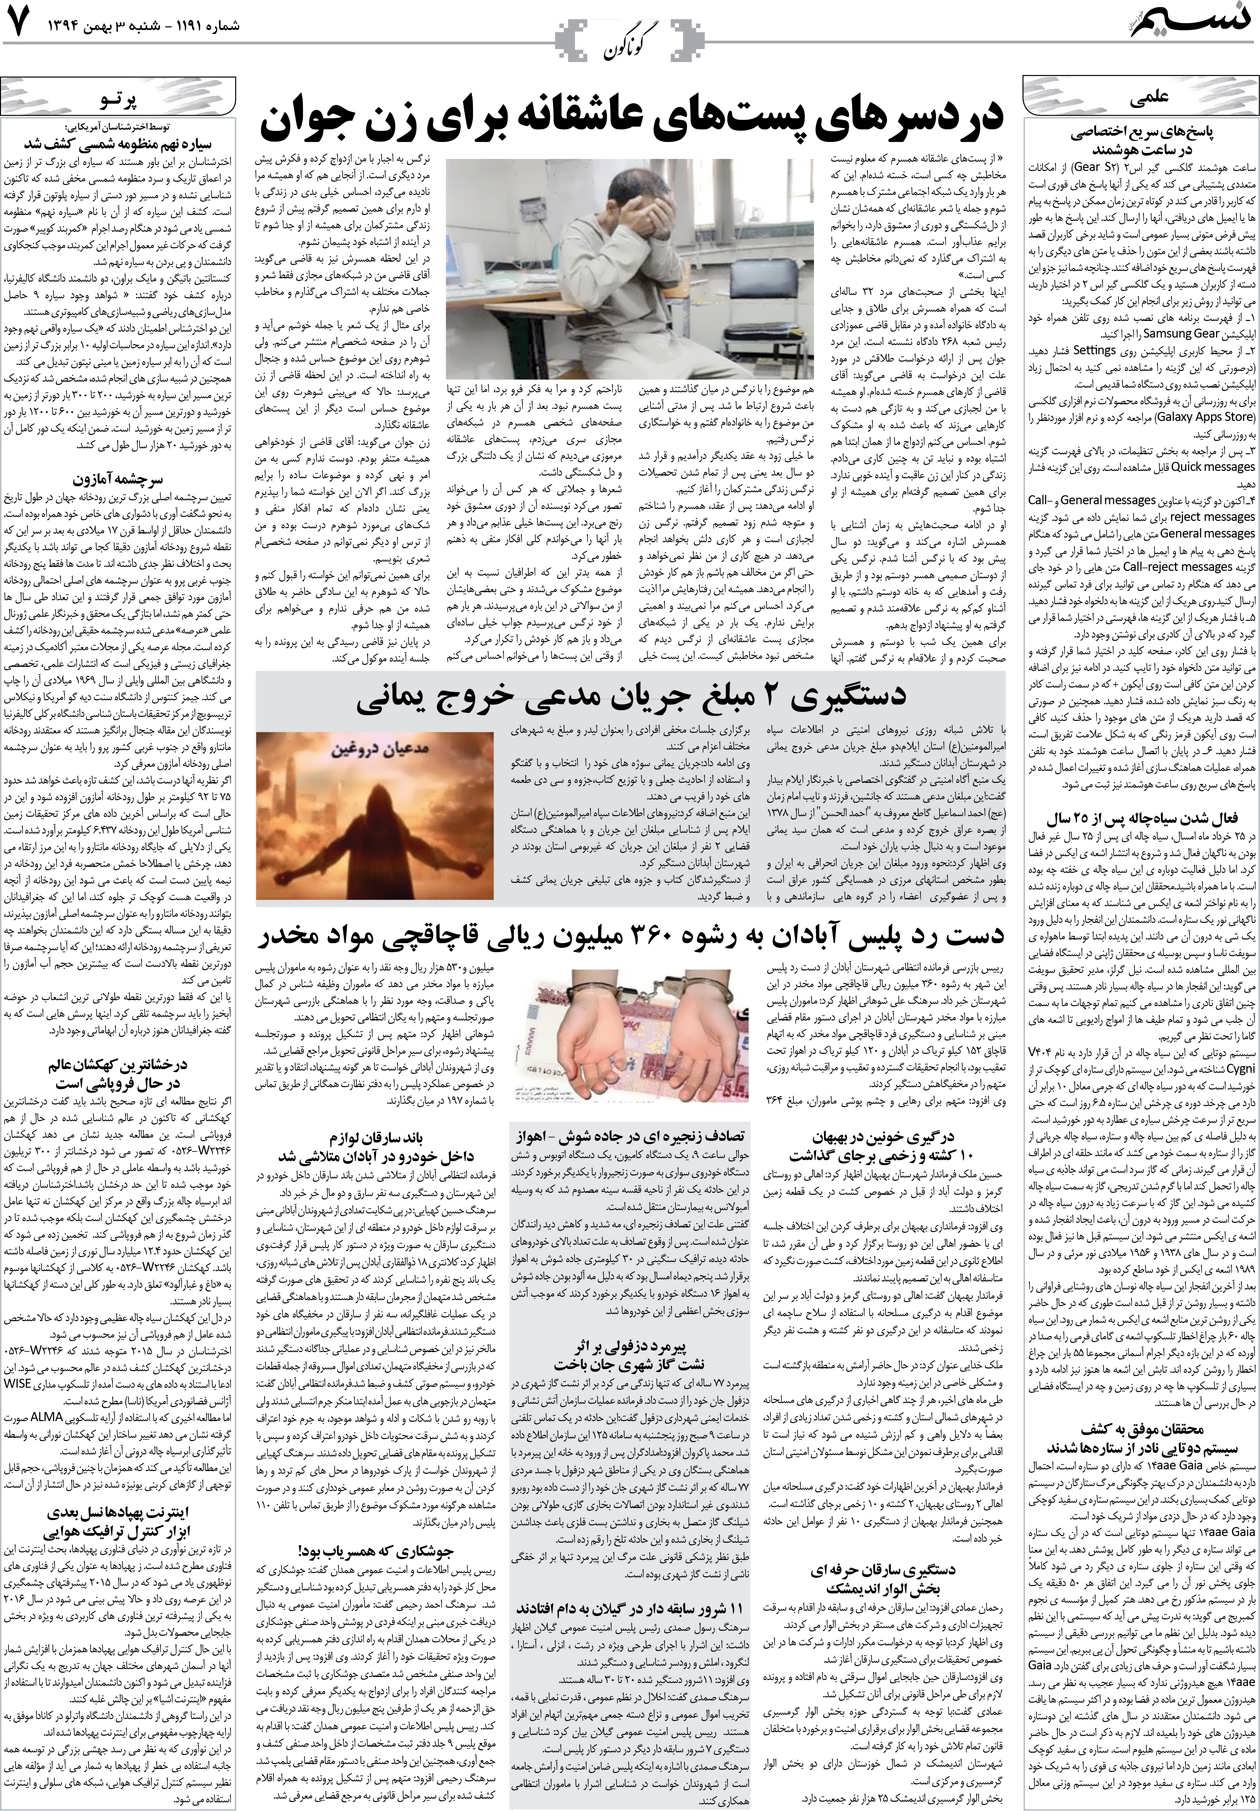 صفحه گوناگون روزنامه نسیم شماره 1191